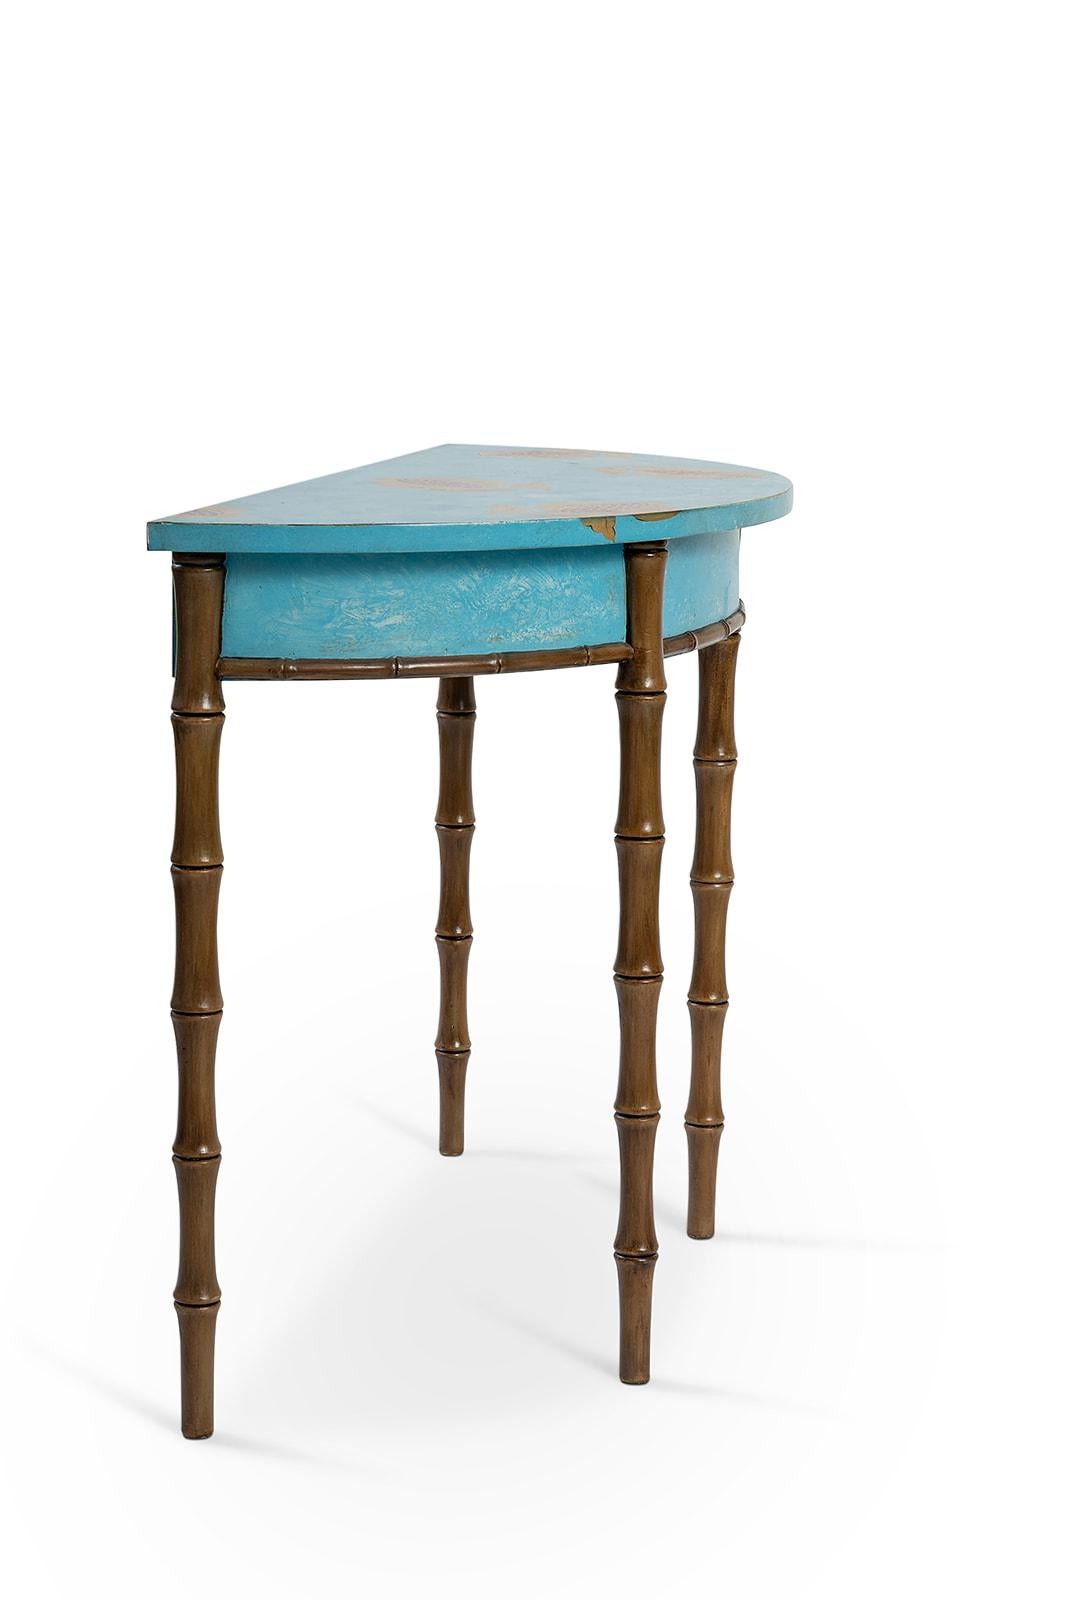 Aus unserer handbemalten Furniture Collection'S freuen wir uns, Ihnen unsere Ravenna Demilune aus Bambus vorzustellen. 
In elektrischem Blau mit süßen Granatapfeldekoren und blattvergoldeten Details wird diese eklektische Demilune jedem Raum - ob